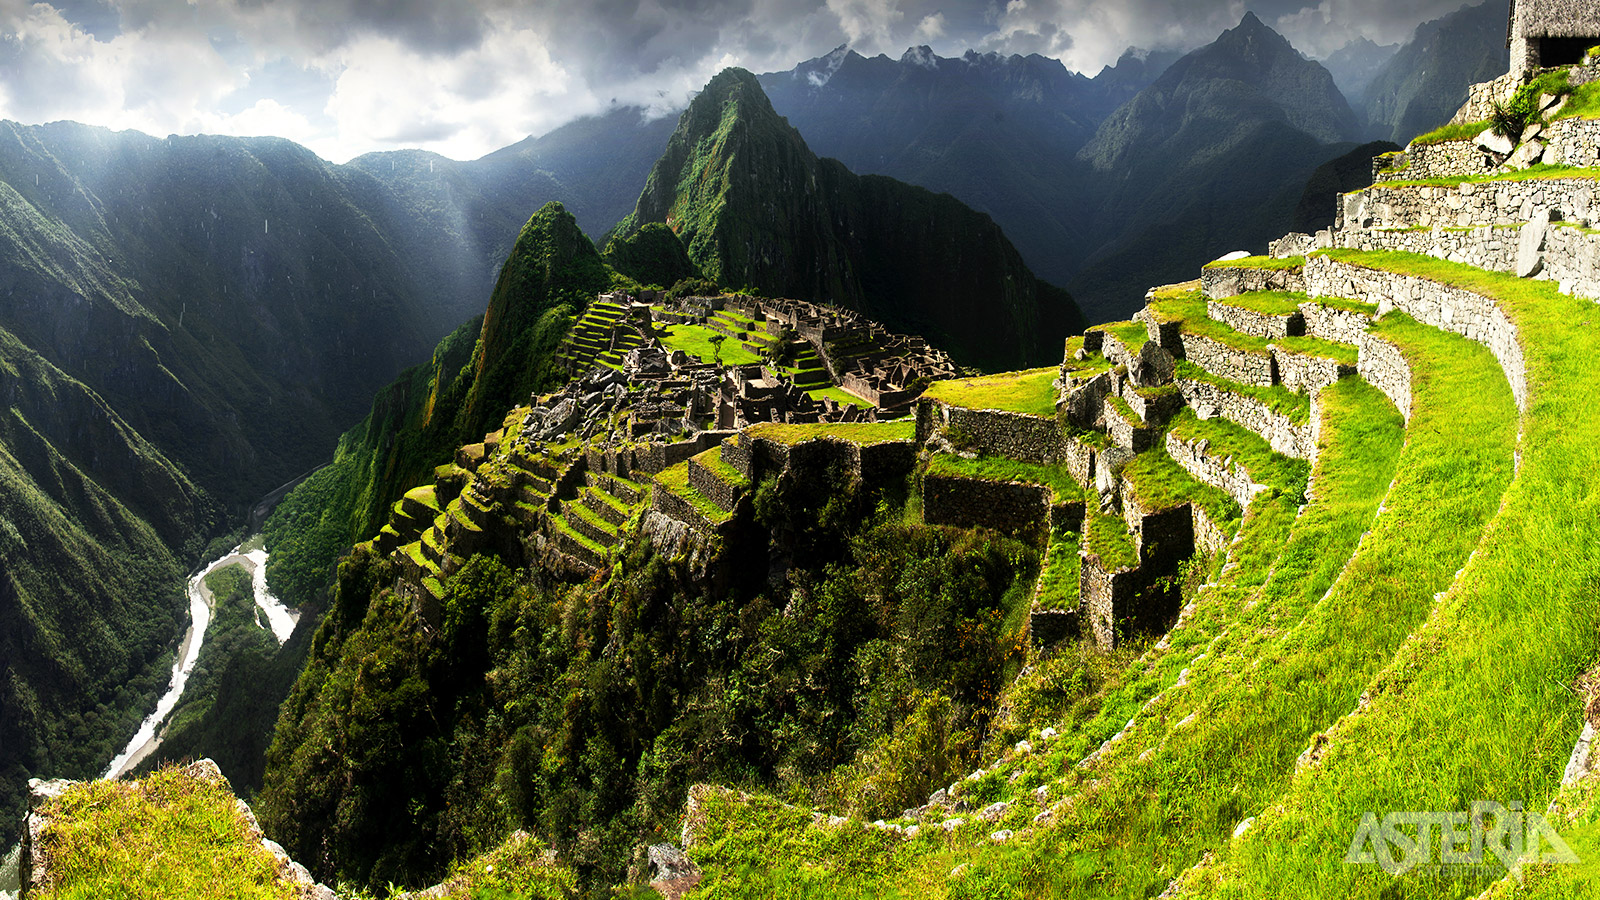 Er is voldoende tijd om het ruïnecomplex van Machu Picchu met zijn tempels, terrassen en heilige plaatsen te verkennen